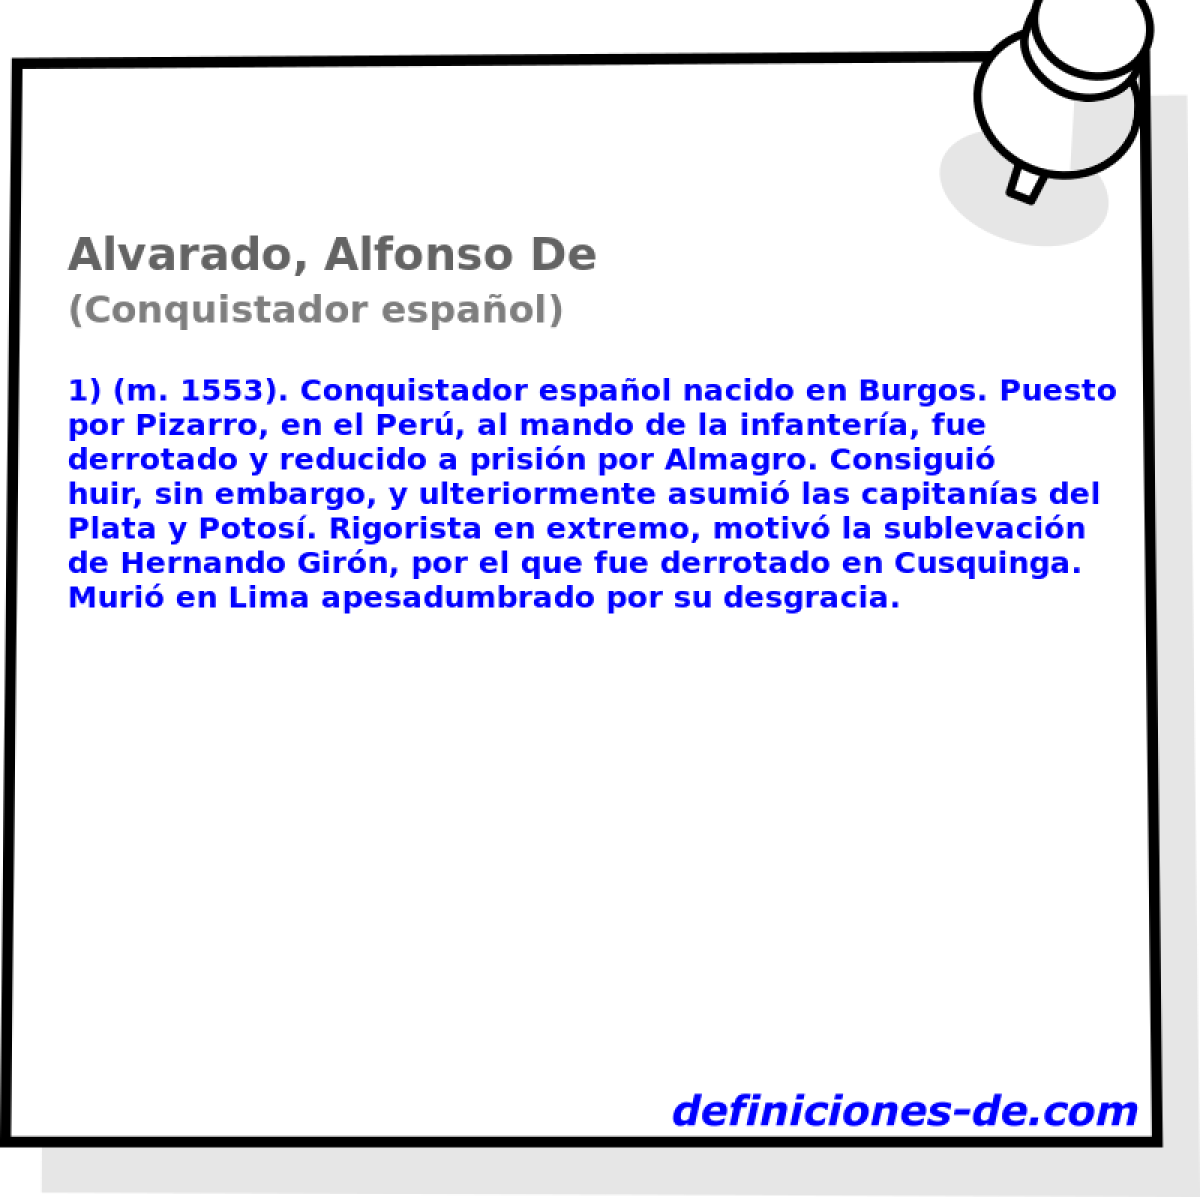 Alvarado, Alfonso De (Conquistador espaol)